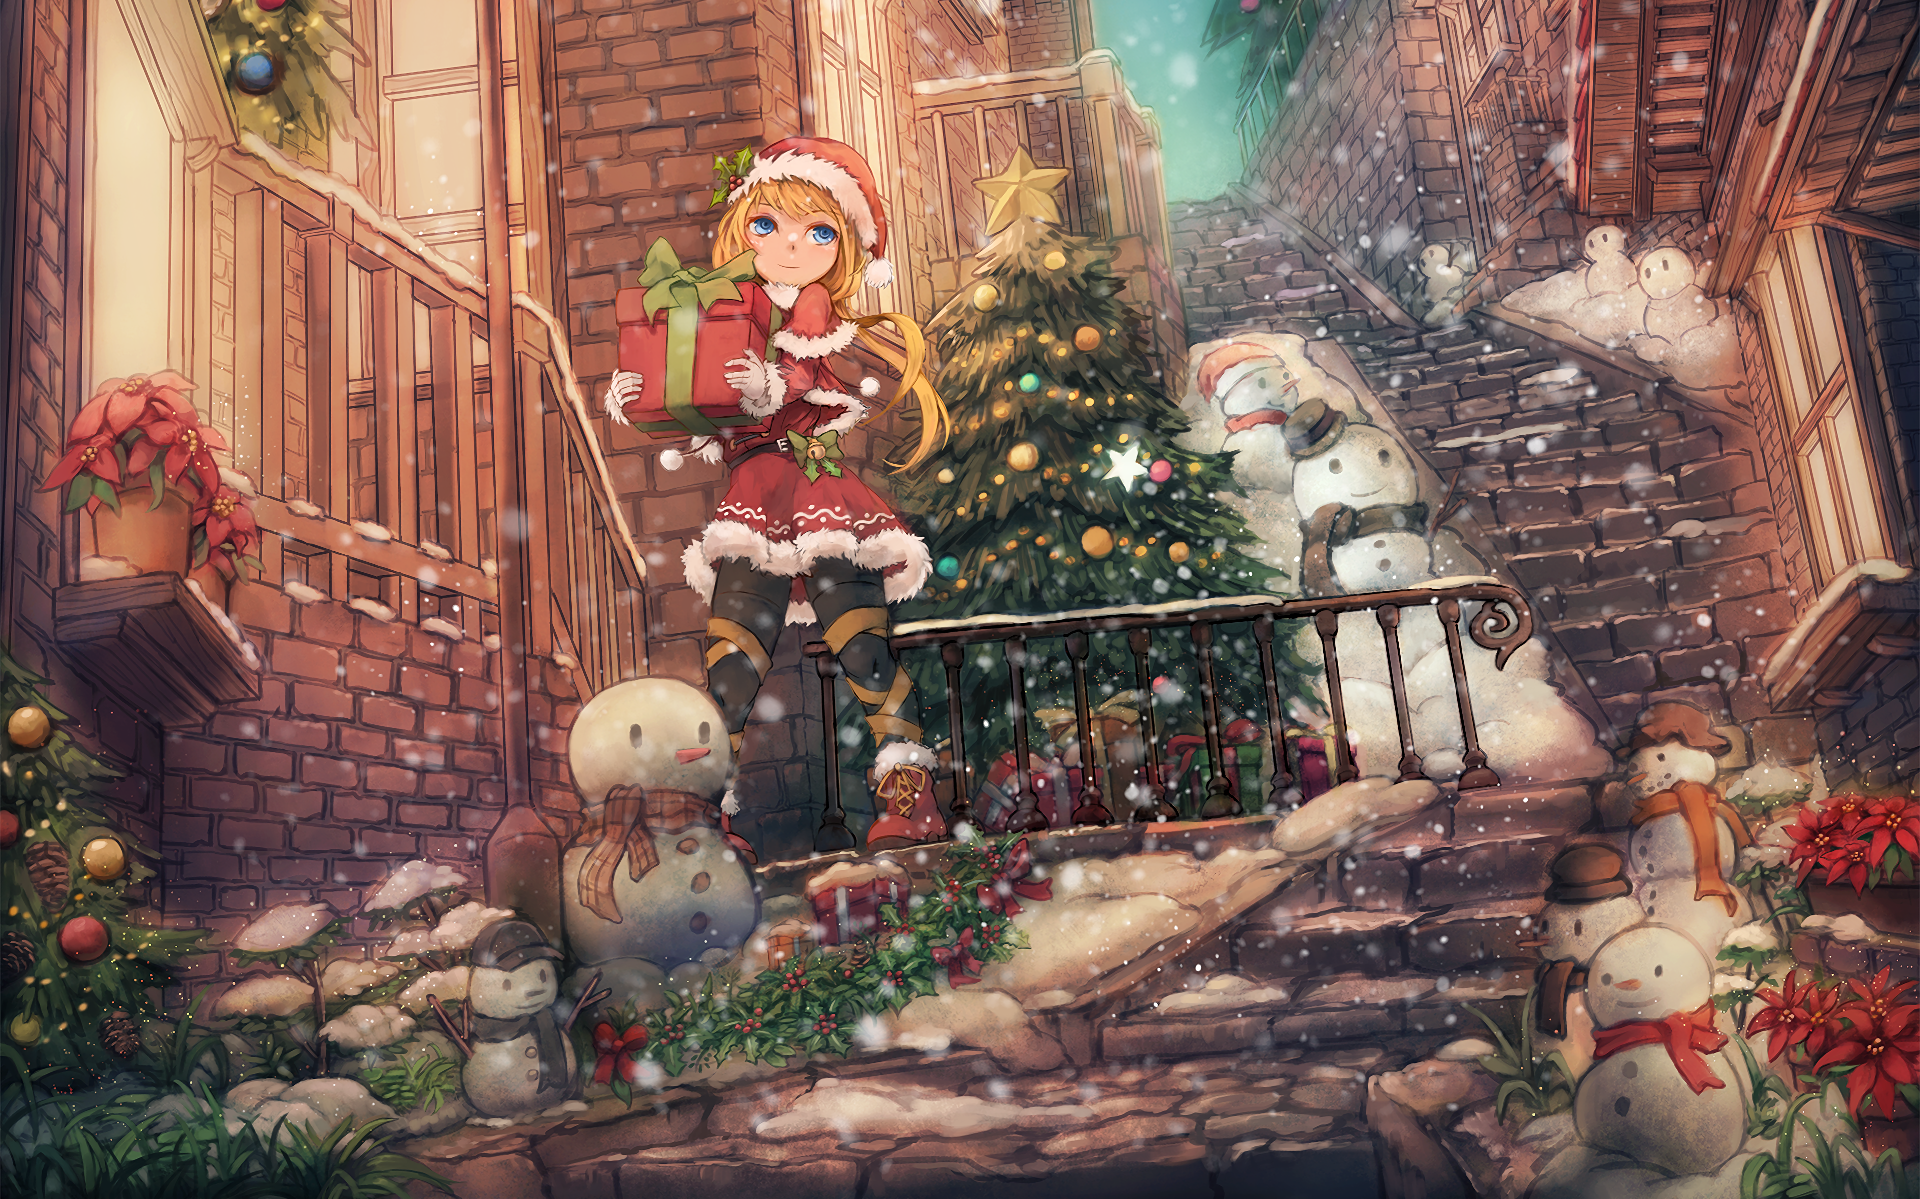 Kawaii Anime Girl & Christmas Tree Cozy Wallpapers - Wallpapers Clan